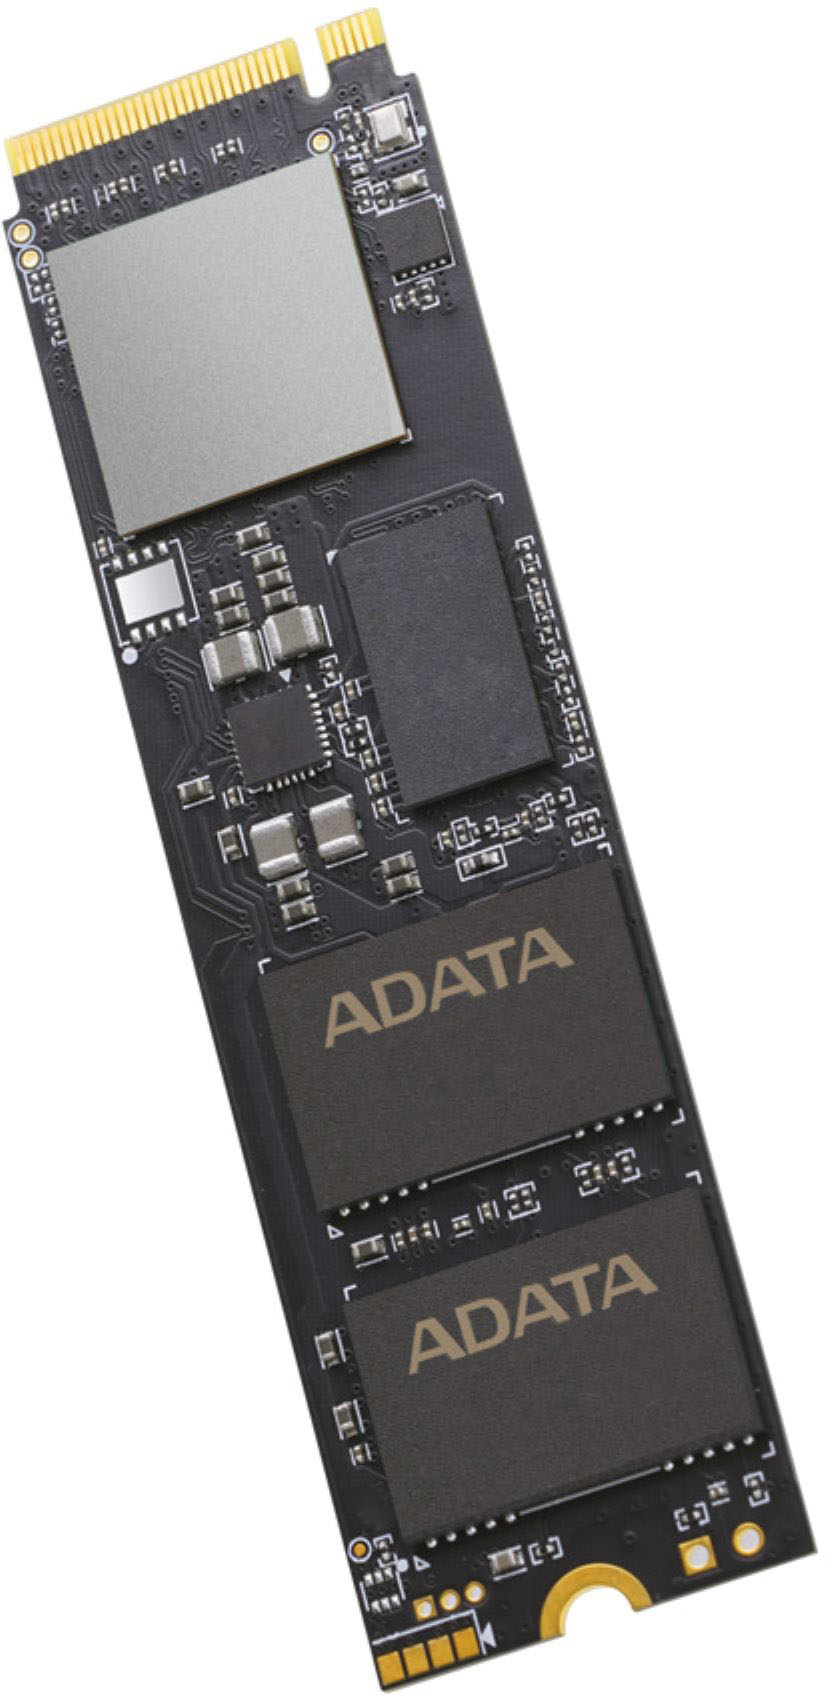 ADATA XPG GAMMIX S70 Blade 2TB Internal SSD PCIe Gen 4 x4 with 